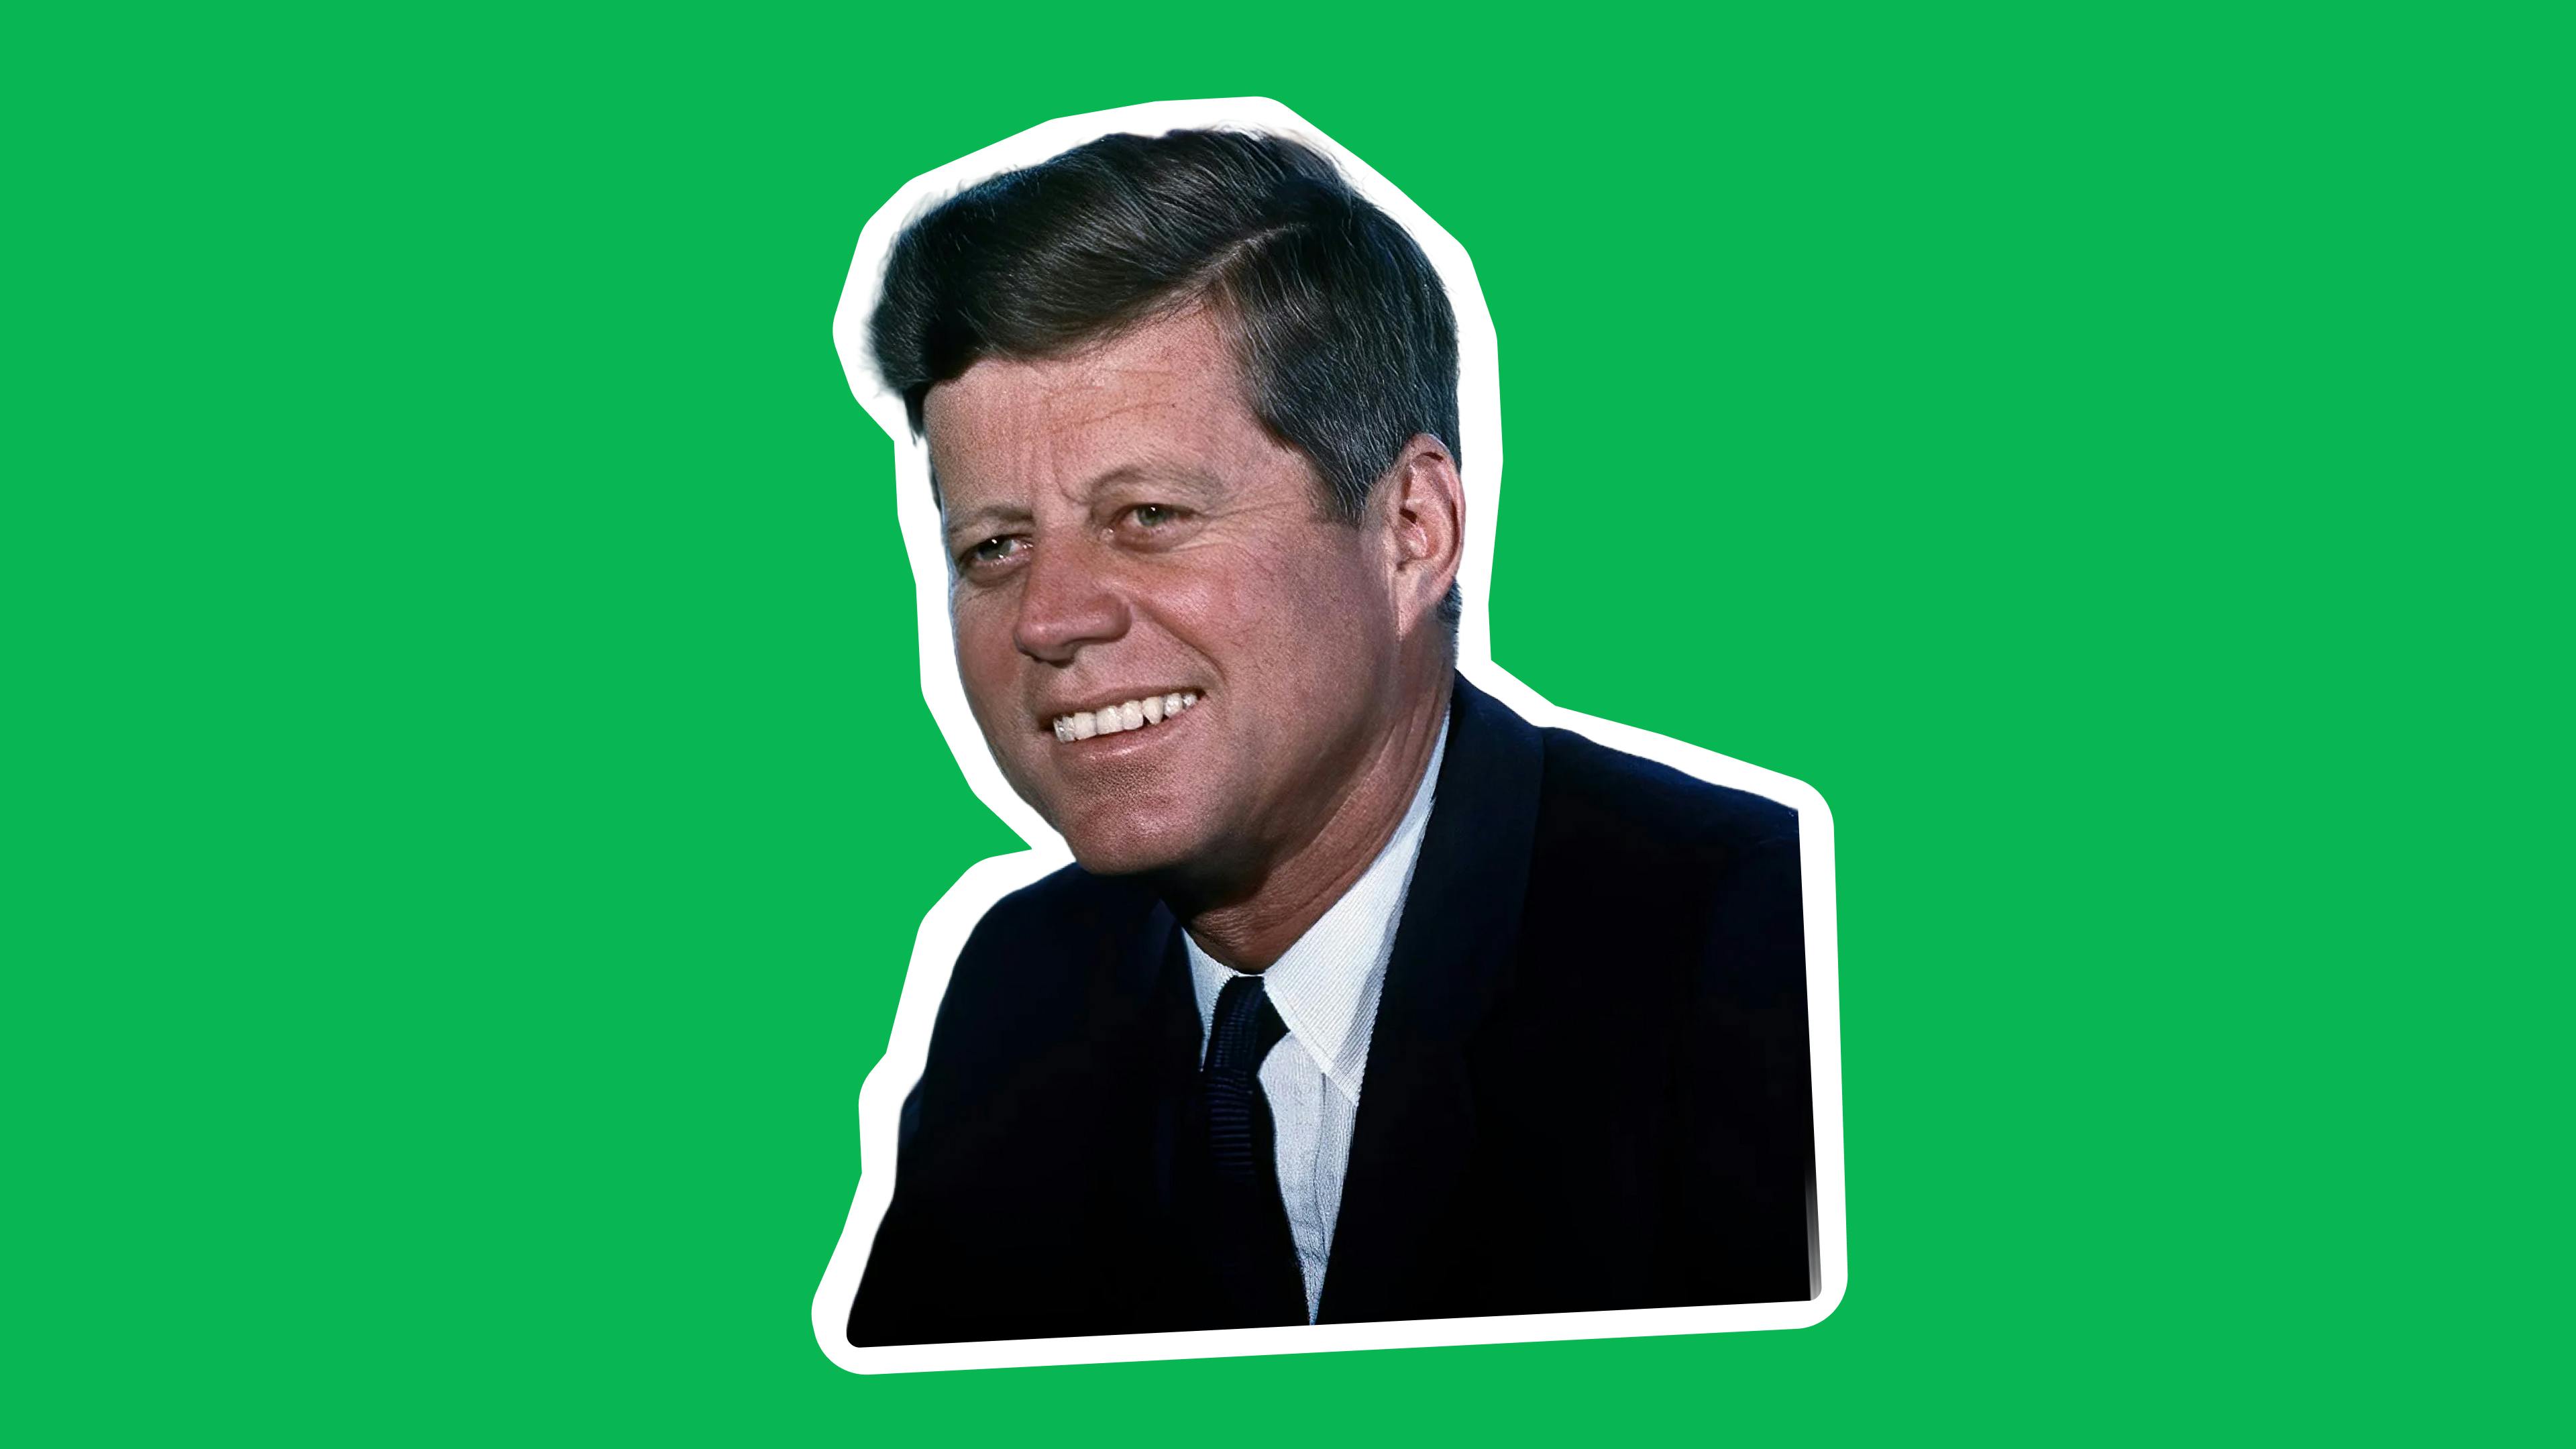 John F. Kennedy in the White House by Arthur Schlesinger, Jr.